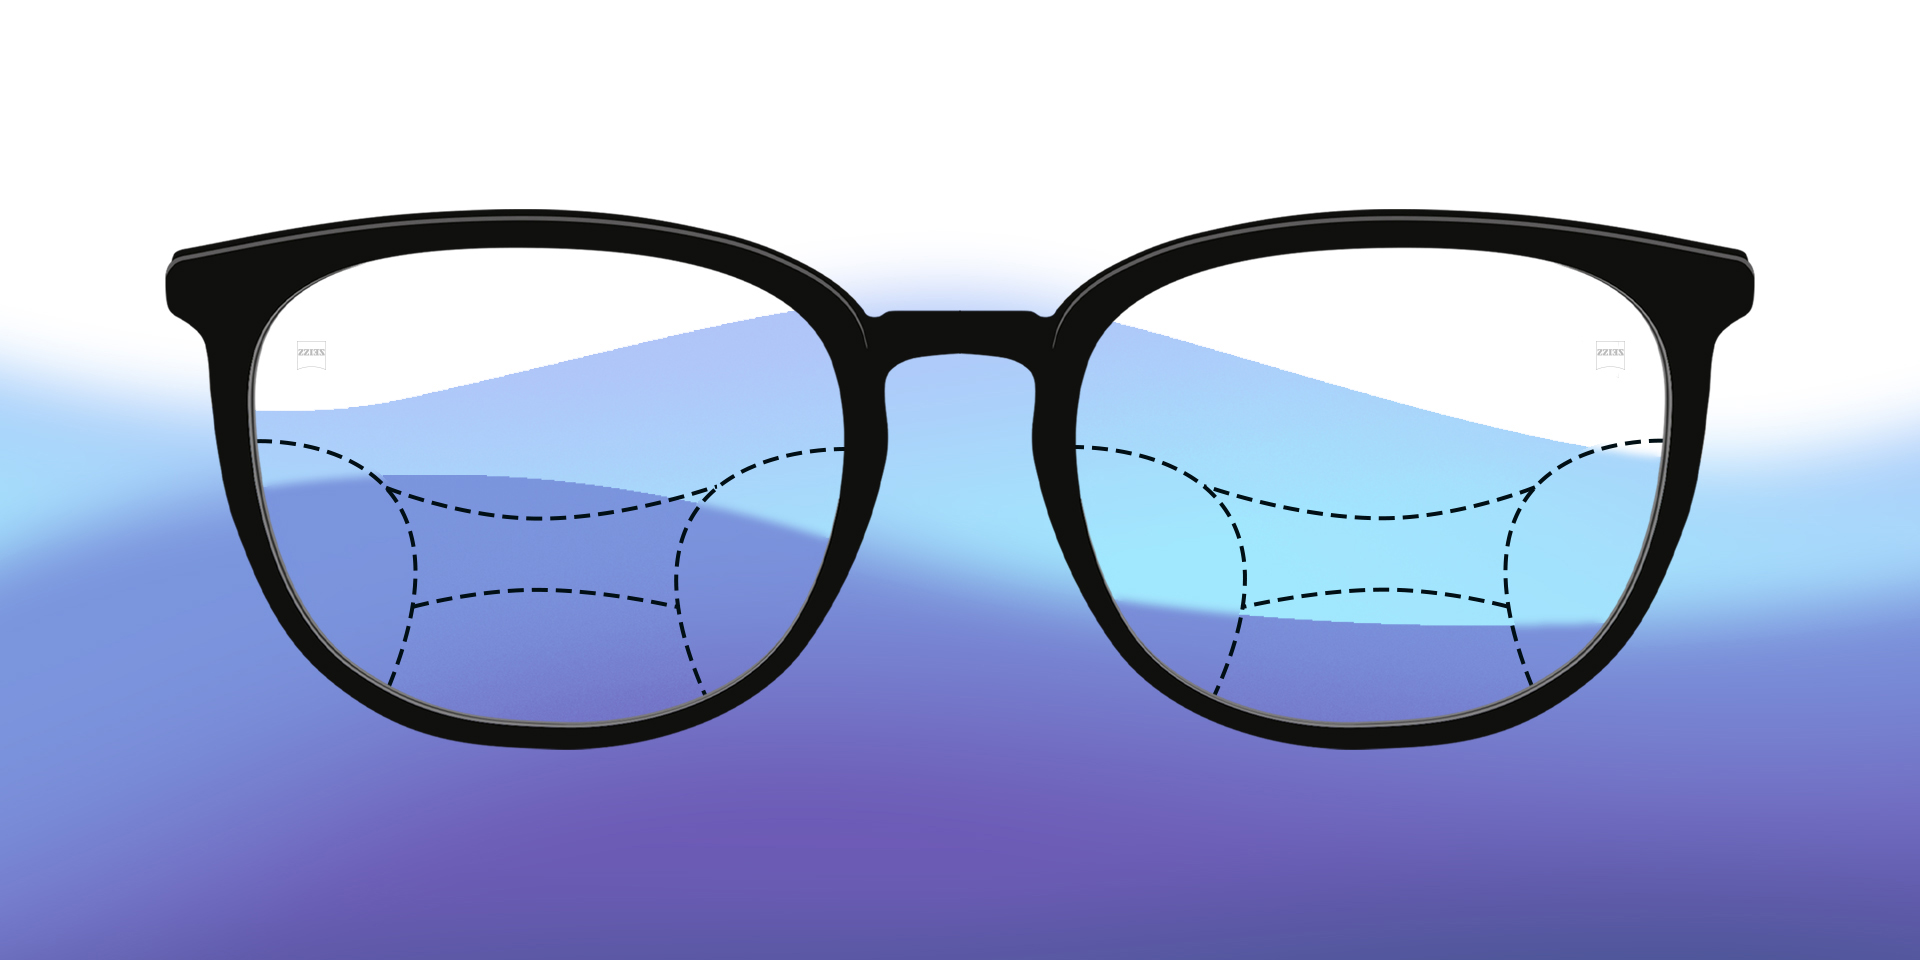 Et billede af illustrerede progressive brilleglas på en farvet baggrund.